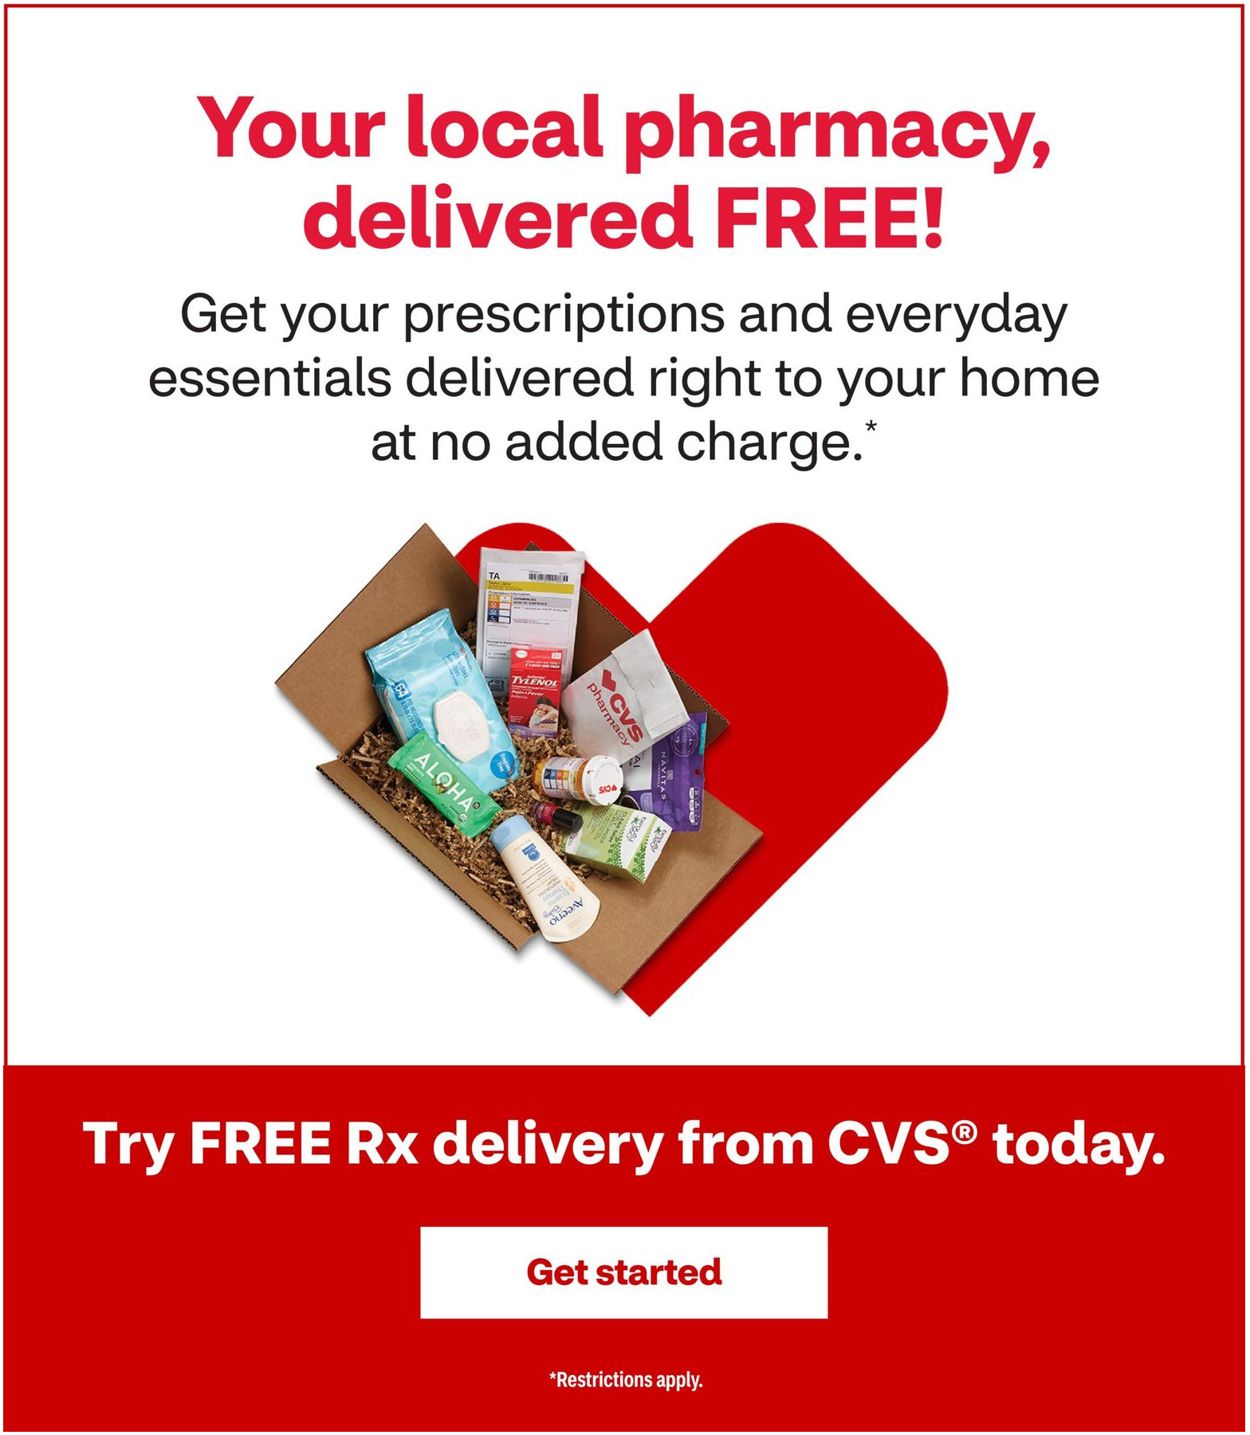 Catalogue CVS Pharmacy from 11/22/2020